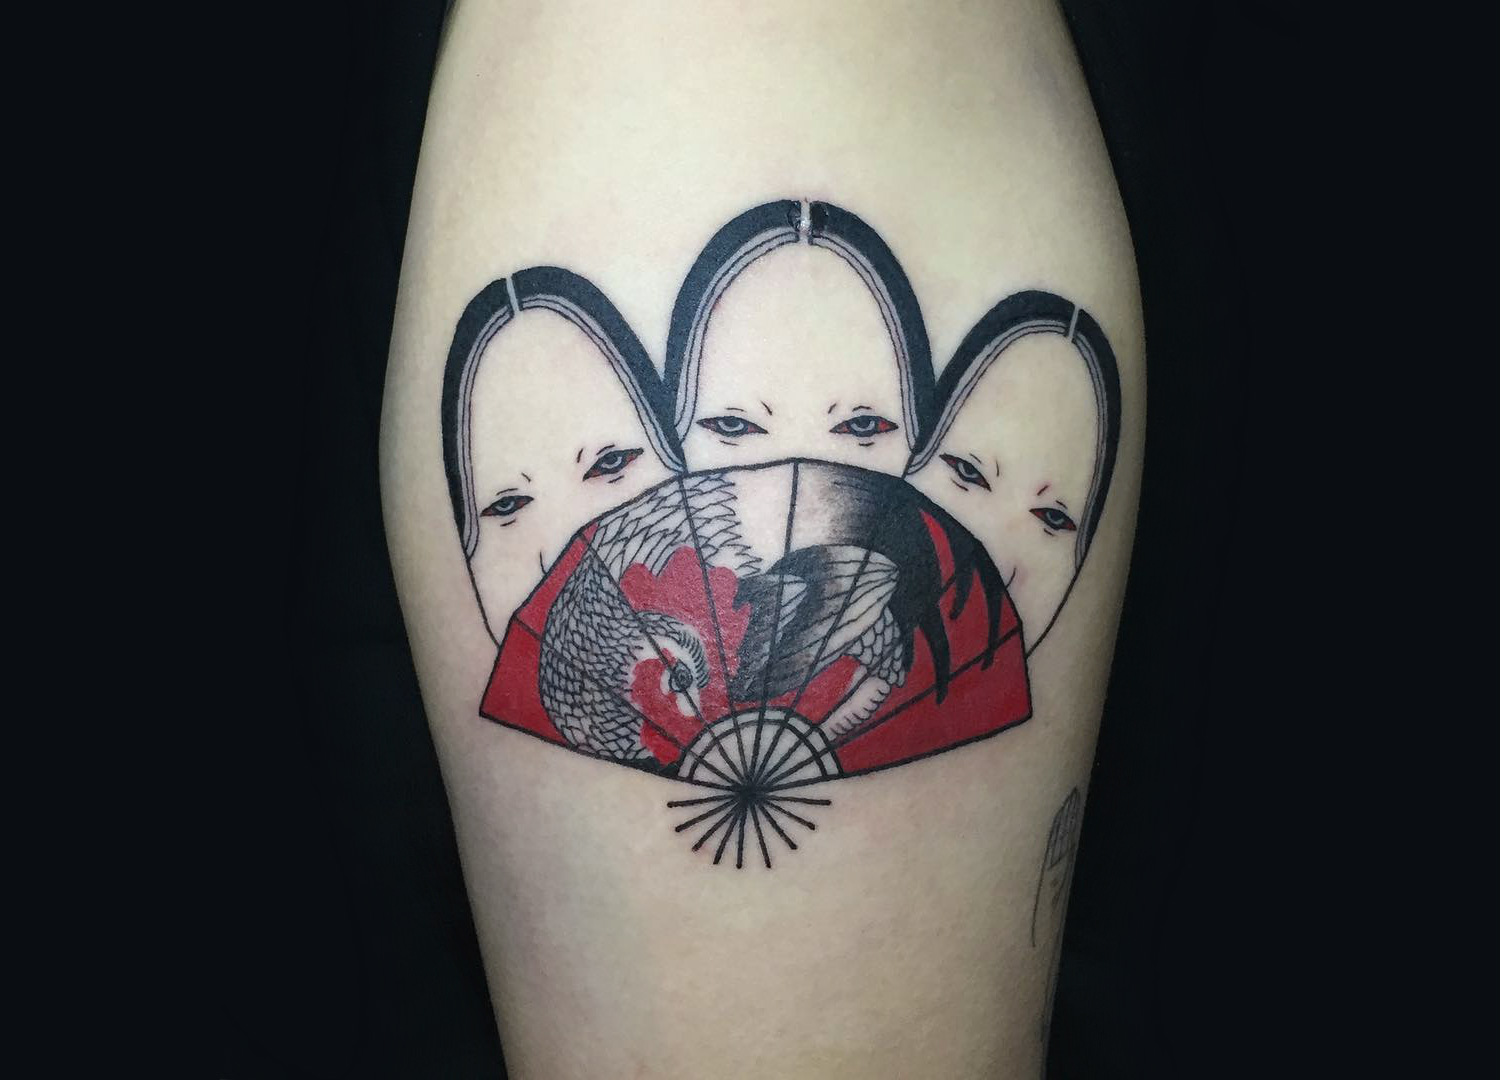 Japanese mask and fan tattoo by Suzani.